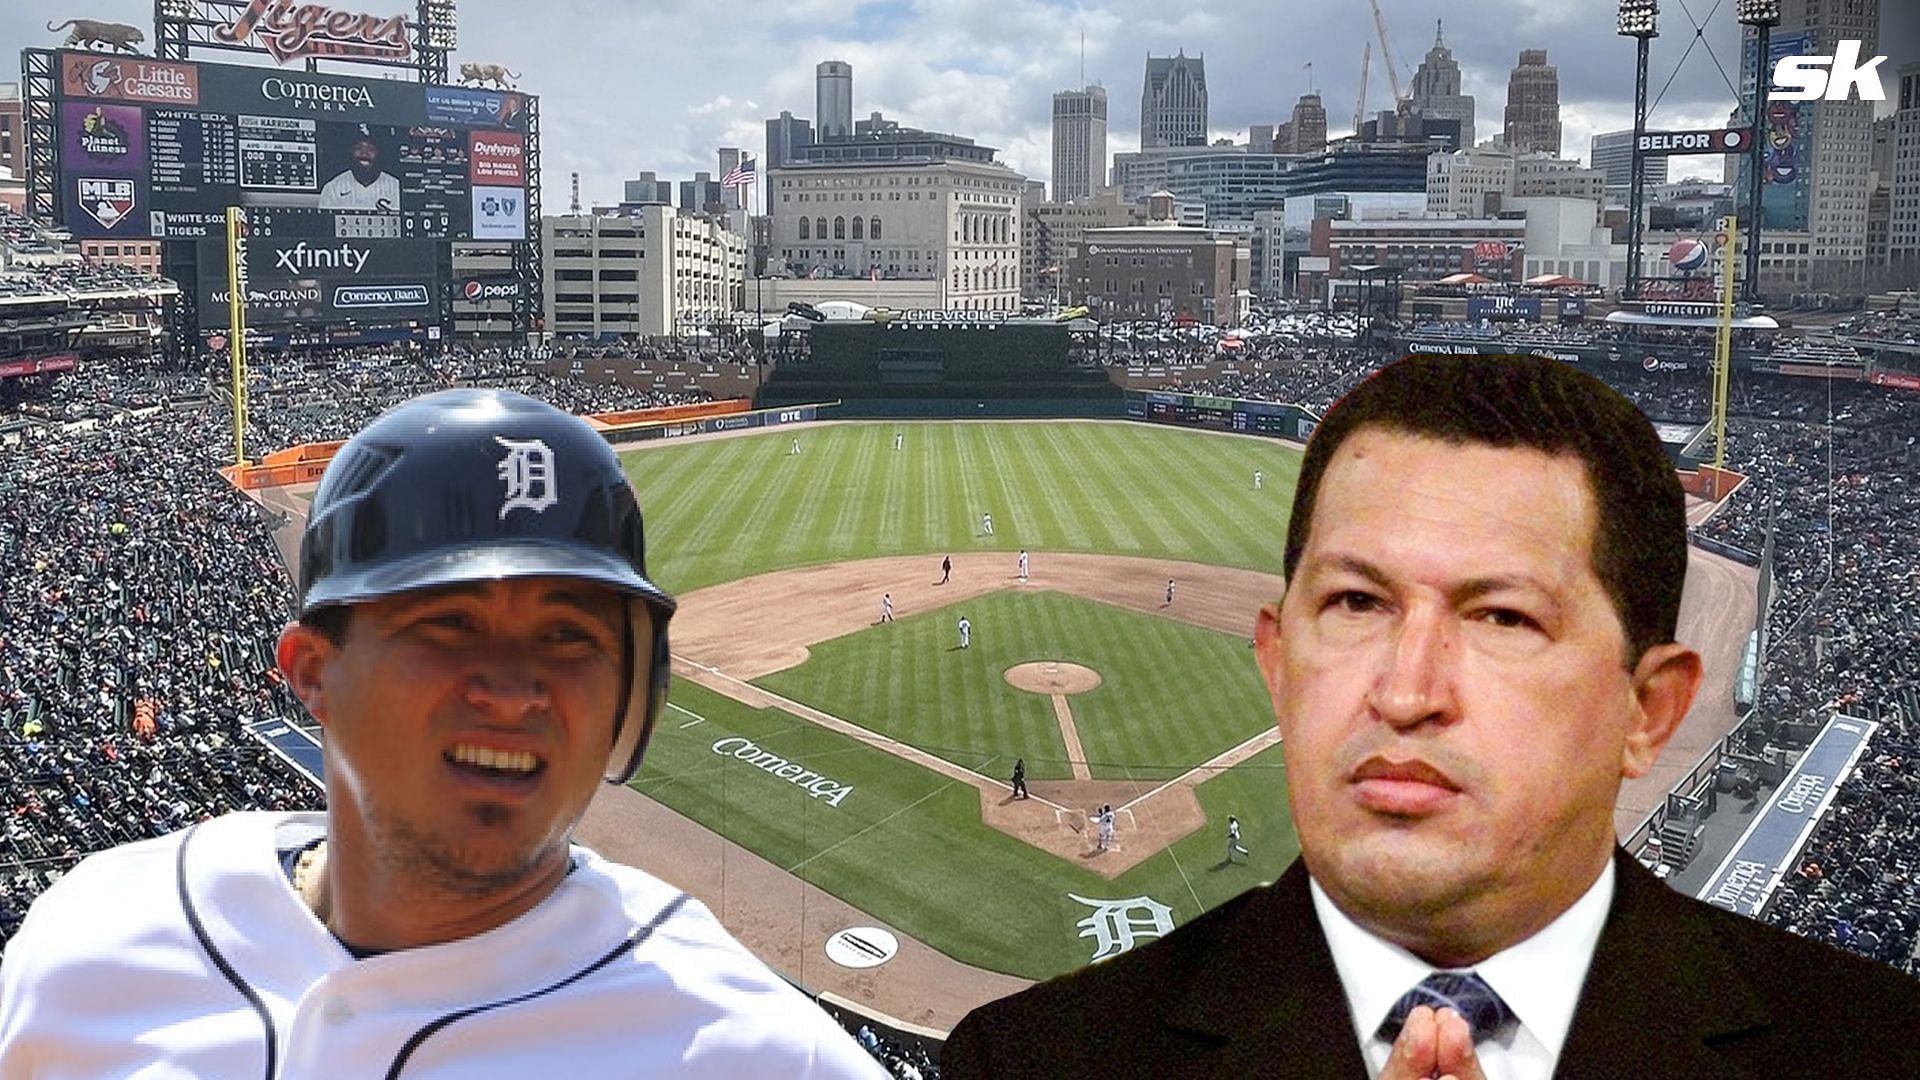 Former MLB star Magglio Ordonez aligned himself with former Venezuelan leader Hugo Chavez